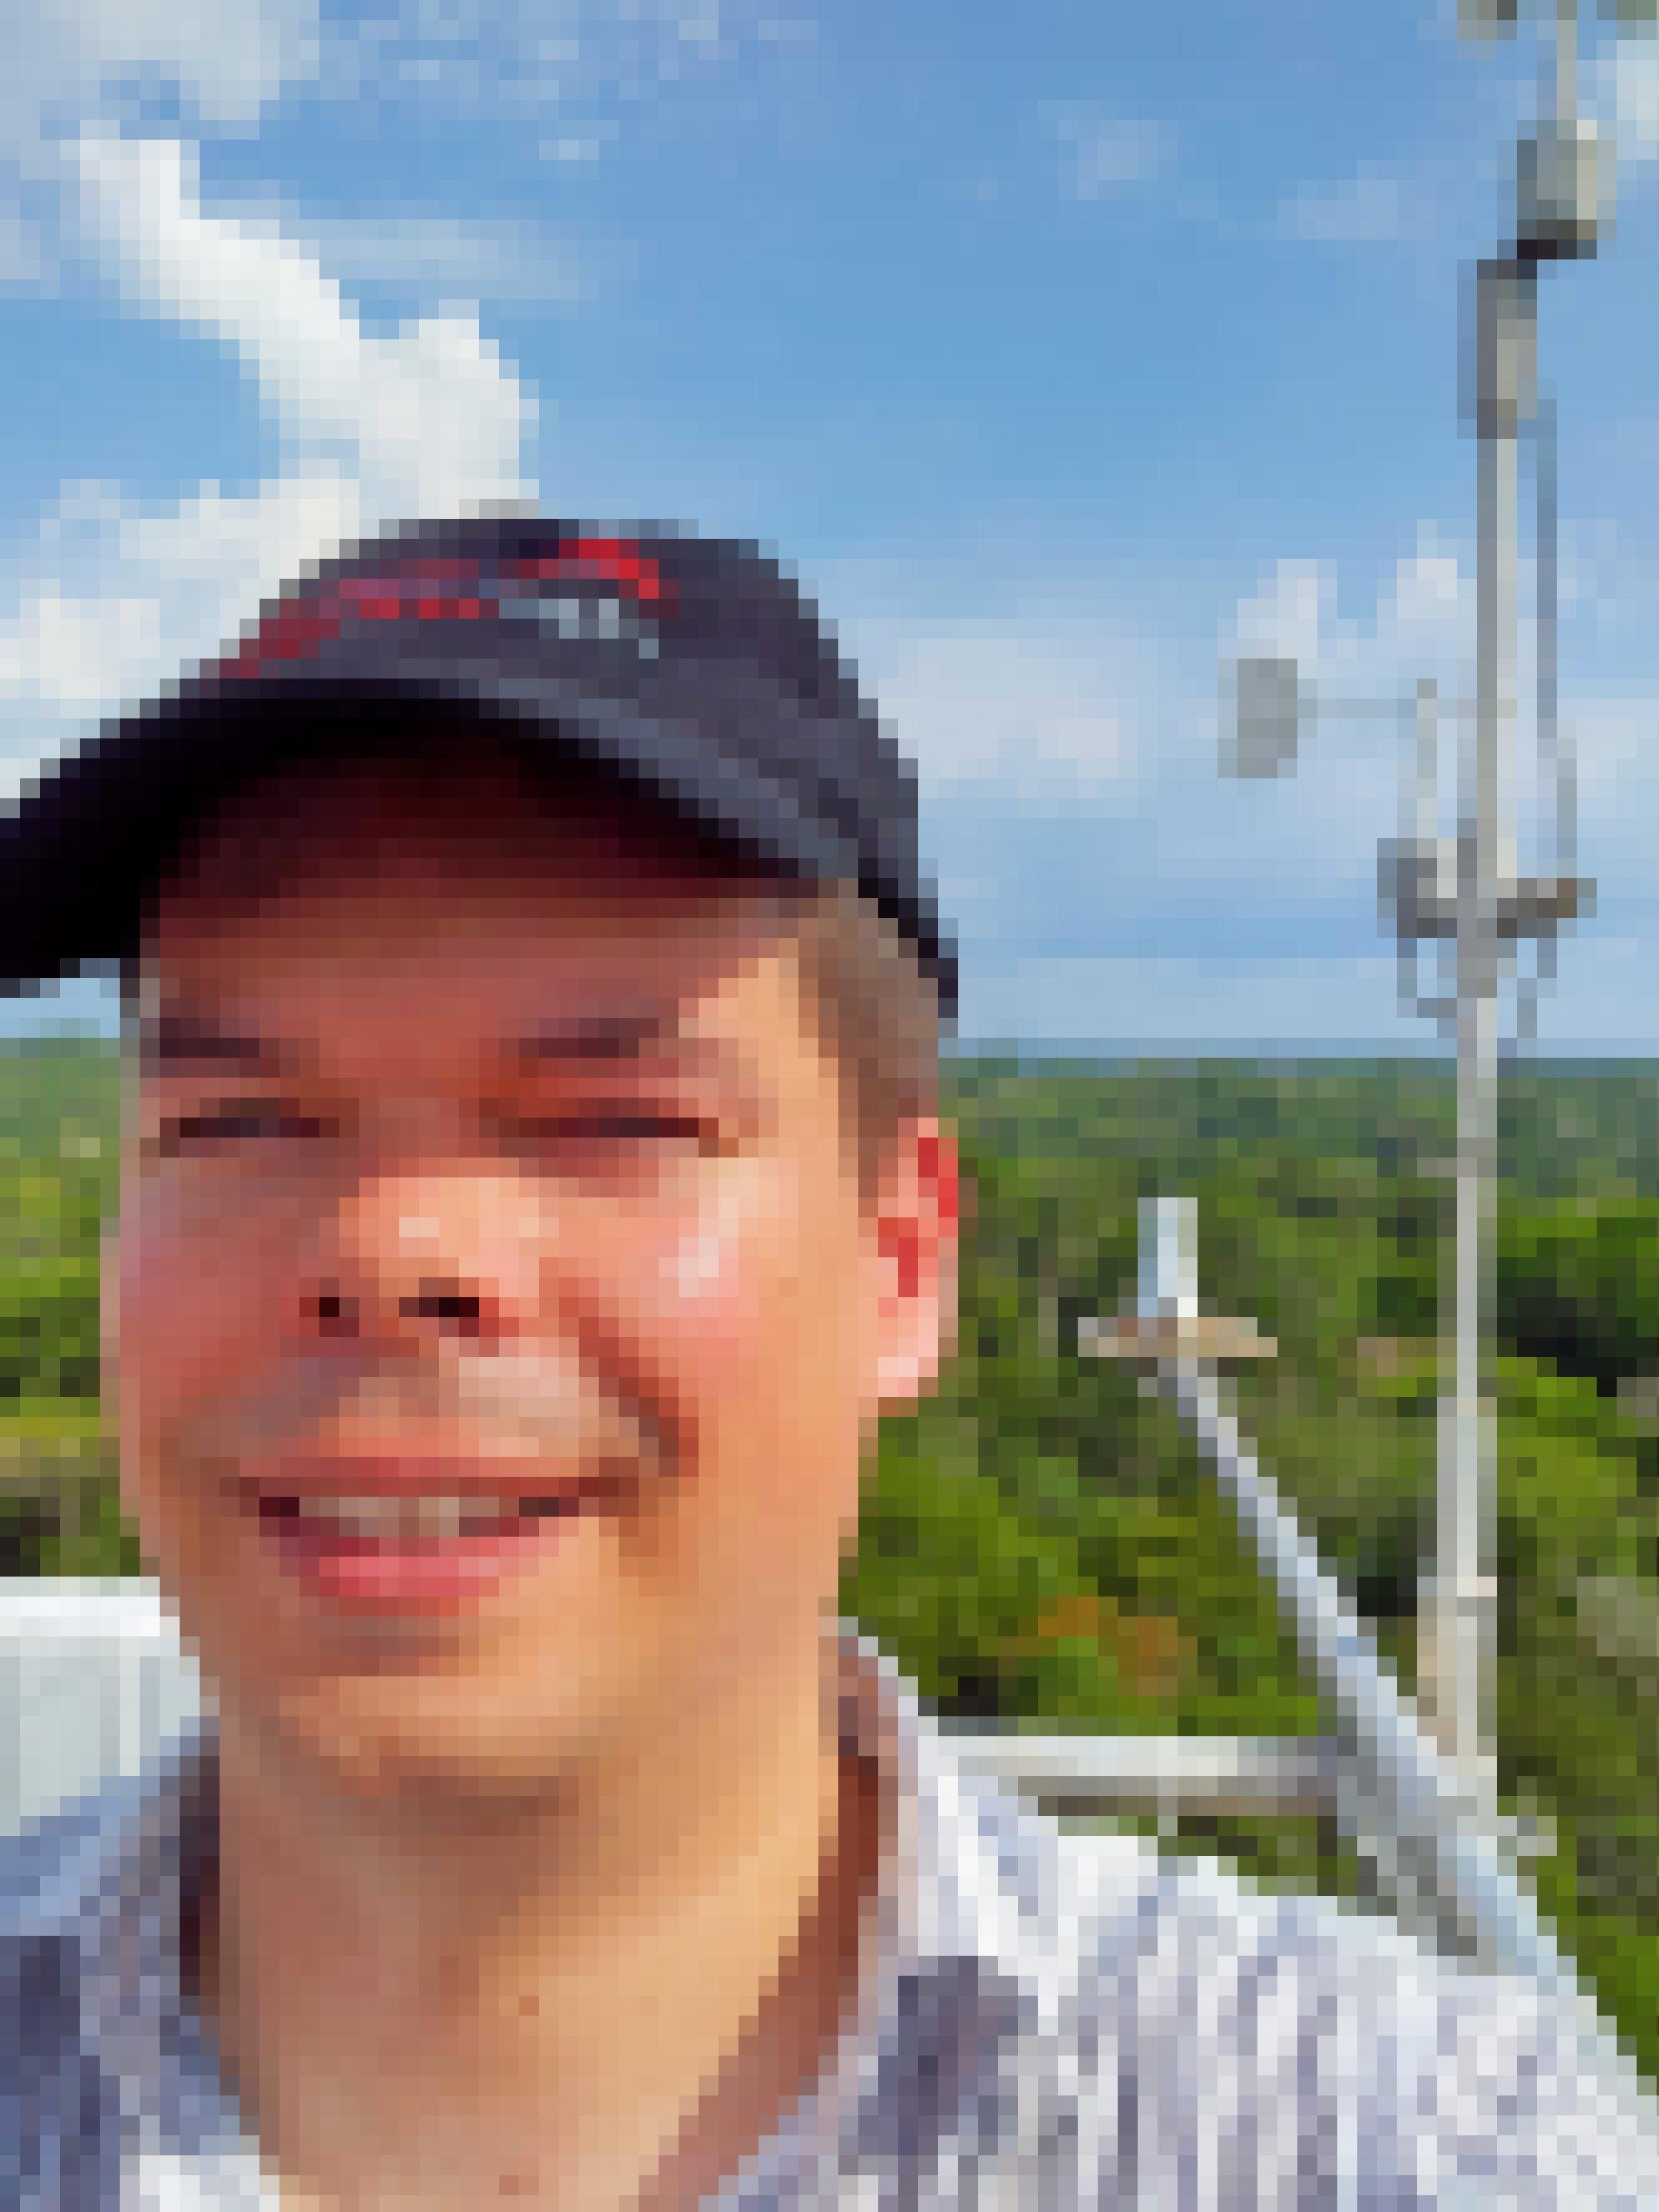 Selfie des Autors auf einem Forschungsturm mit Messgeräten